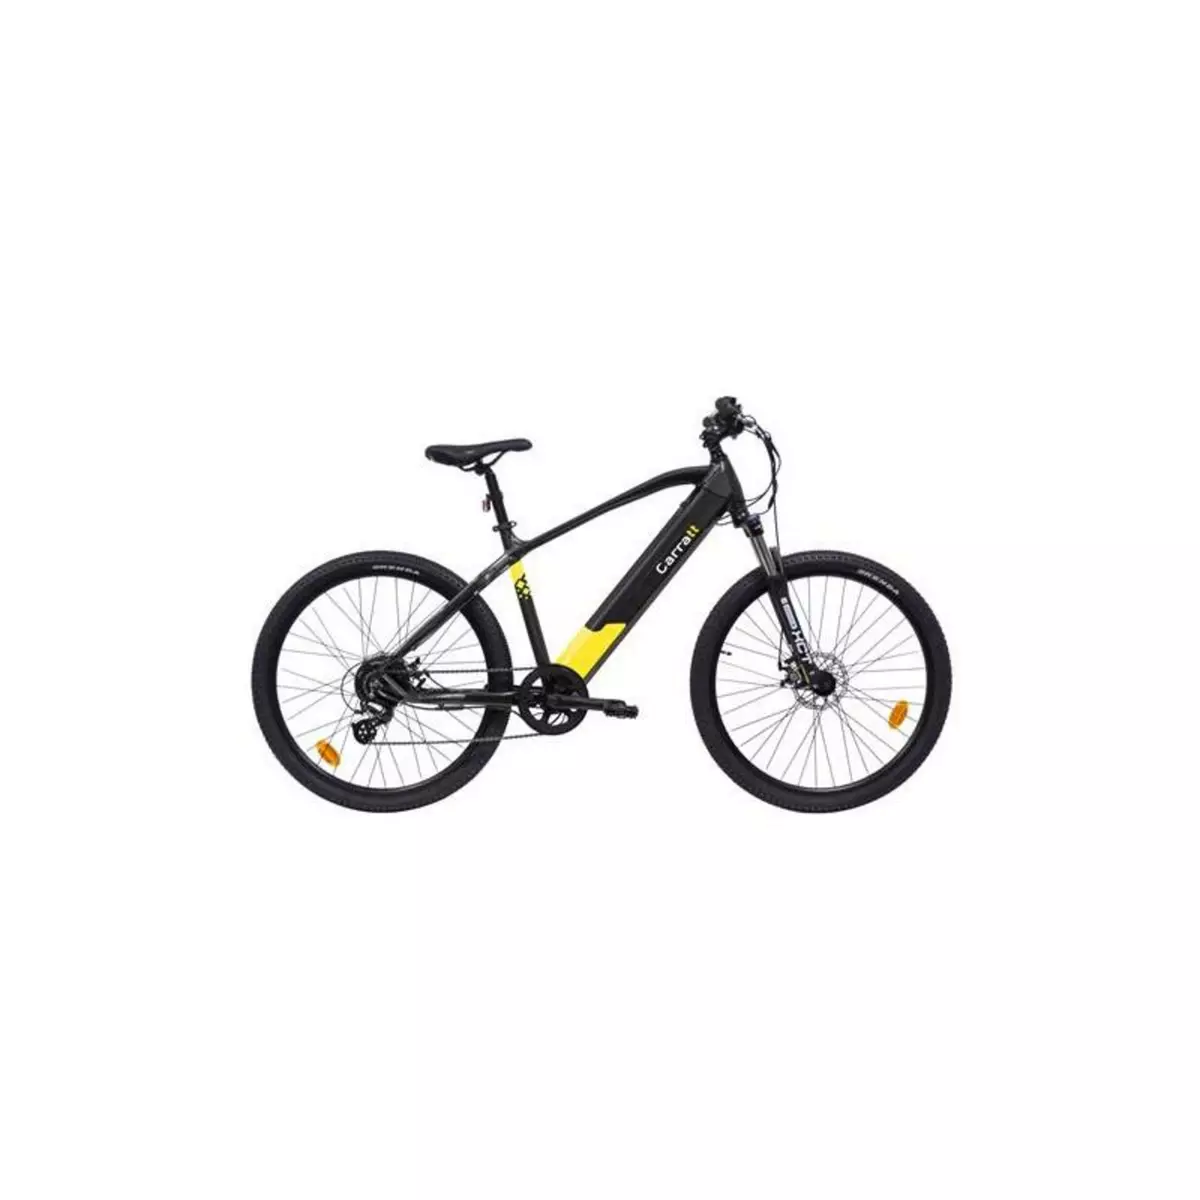  Vélo électrique Carratt E 3400 RM 250 W Gris Anthracite et Jaune